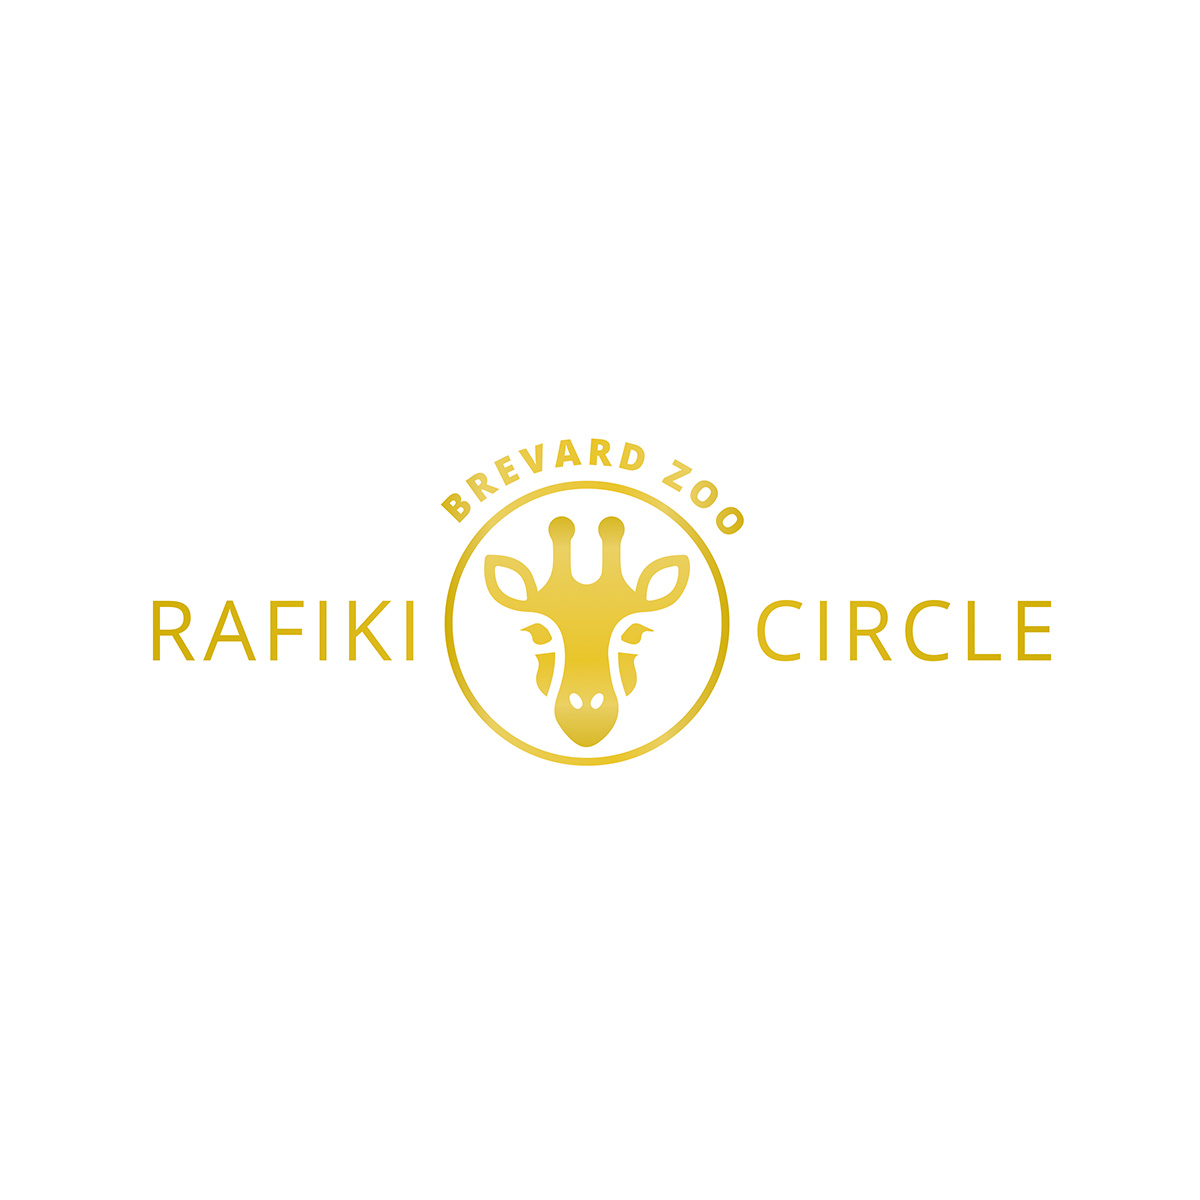 rafiki circle logo